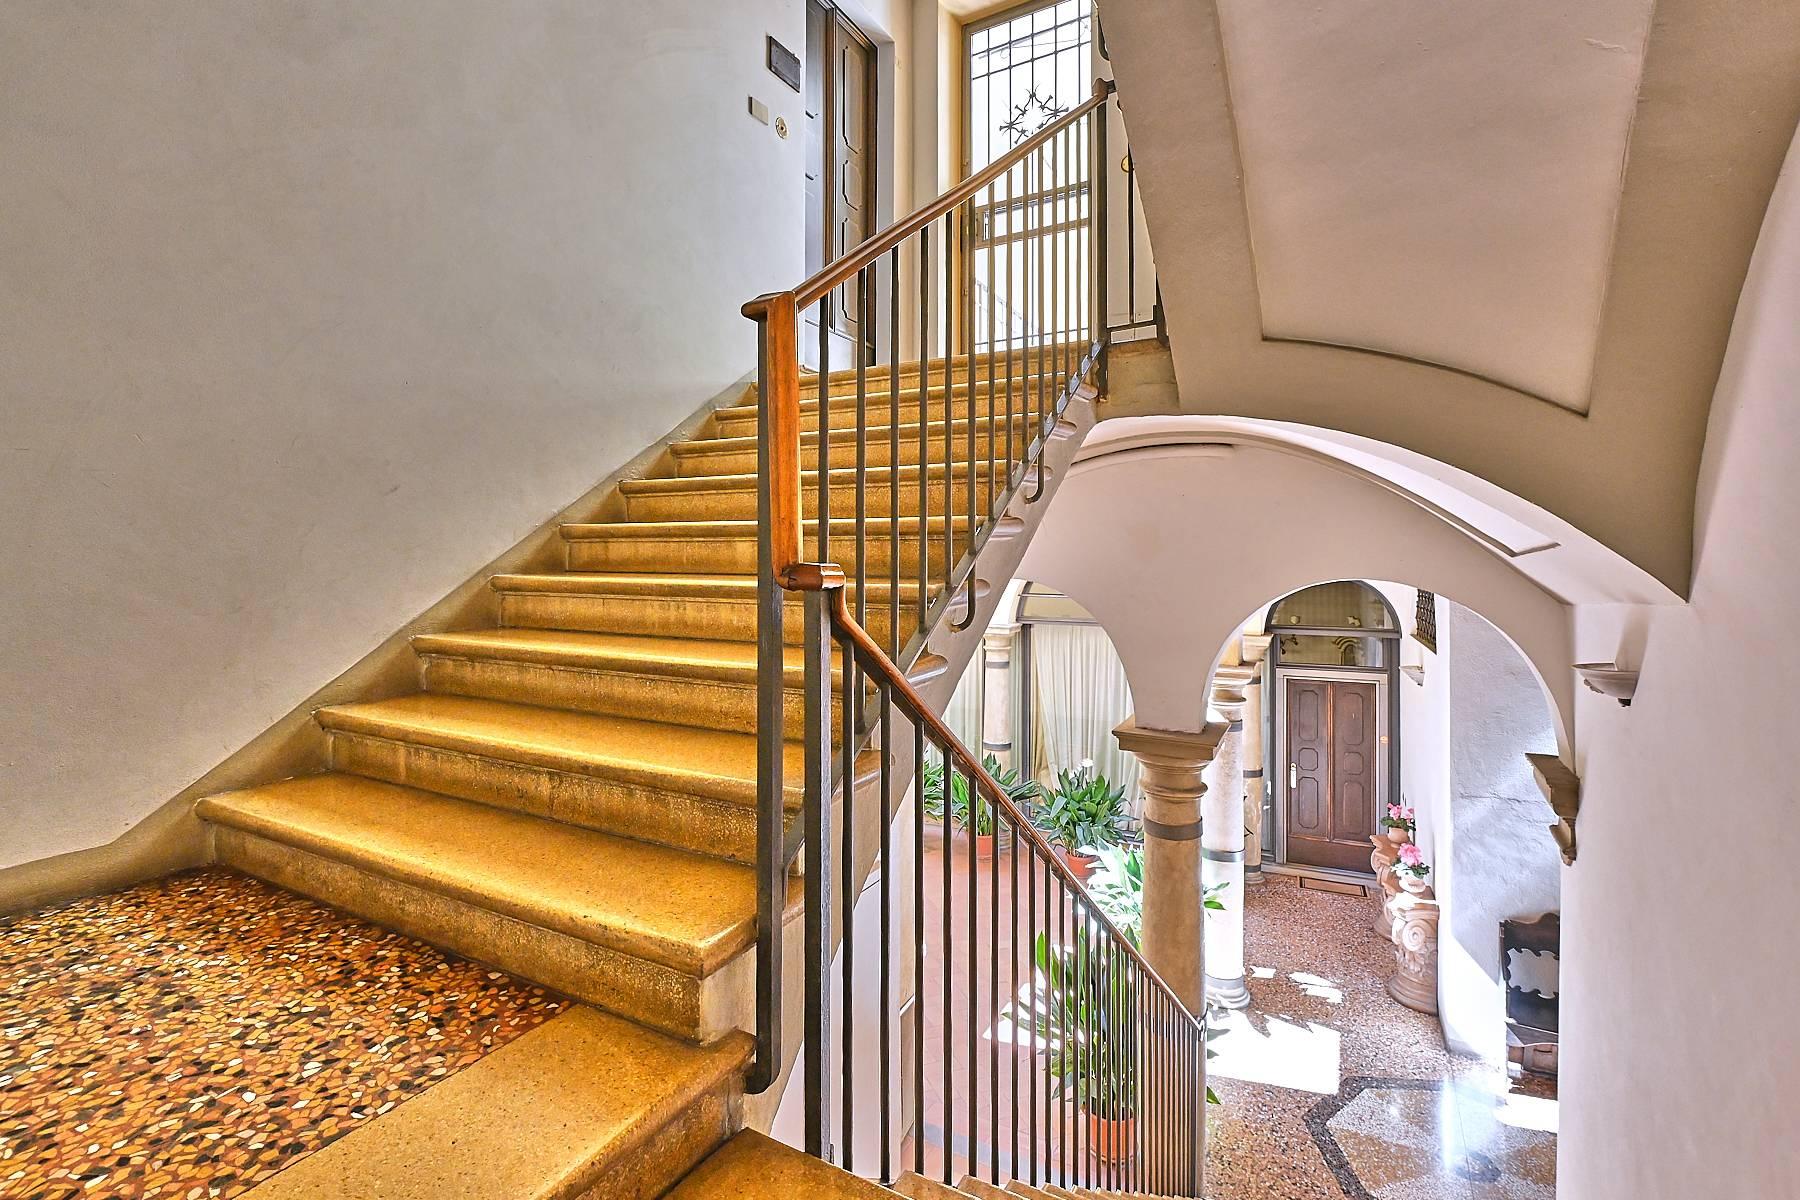 Prestigious apartment in Piazza San Domenico - 1